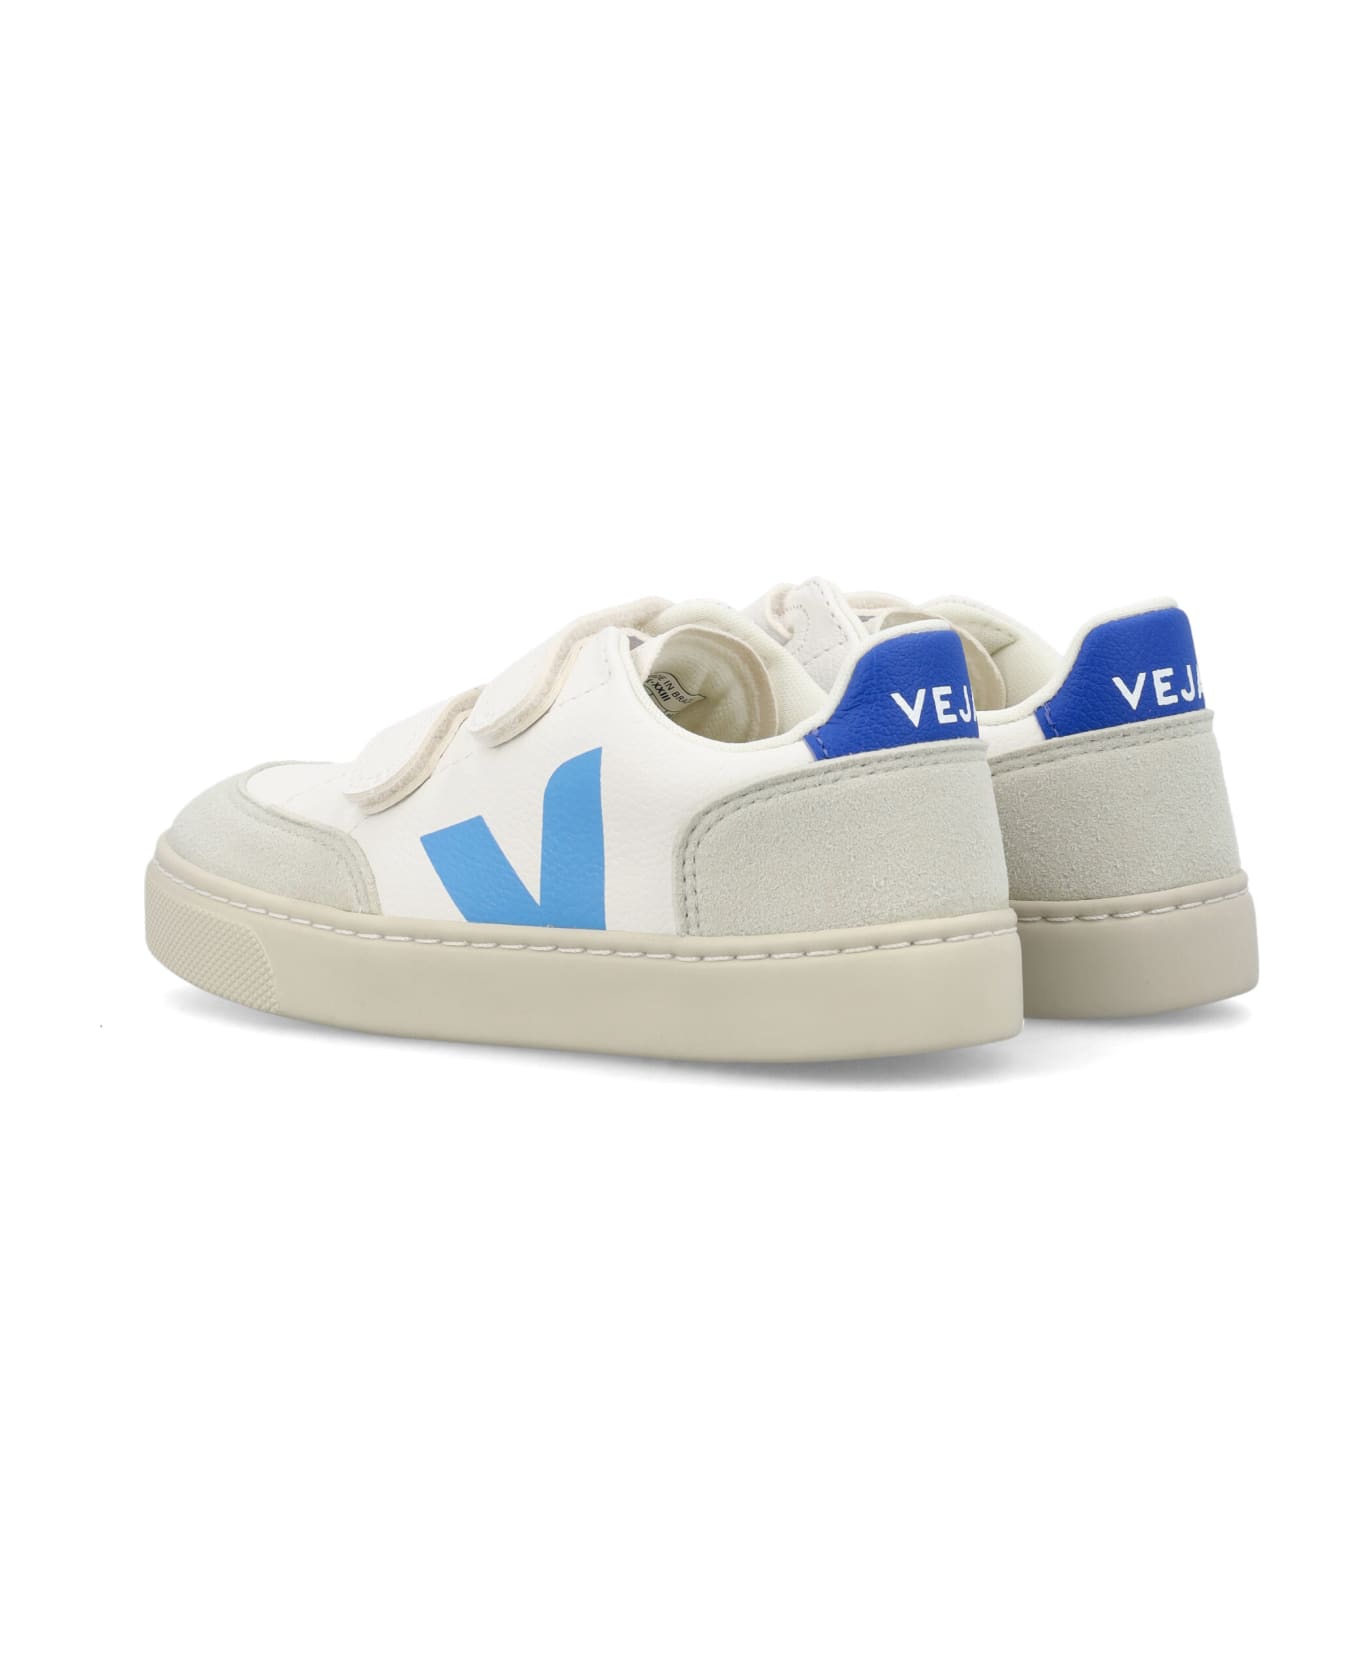 Veja Small V-12 Sneakers - WHITE/BLUE シューズ